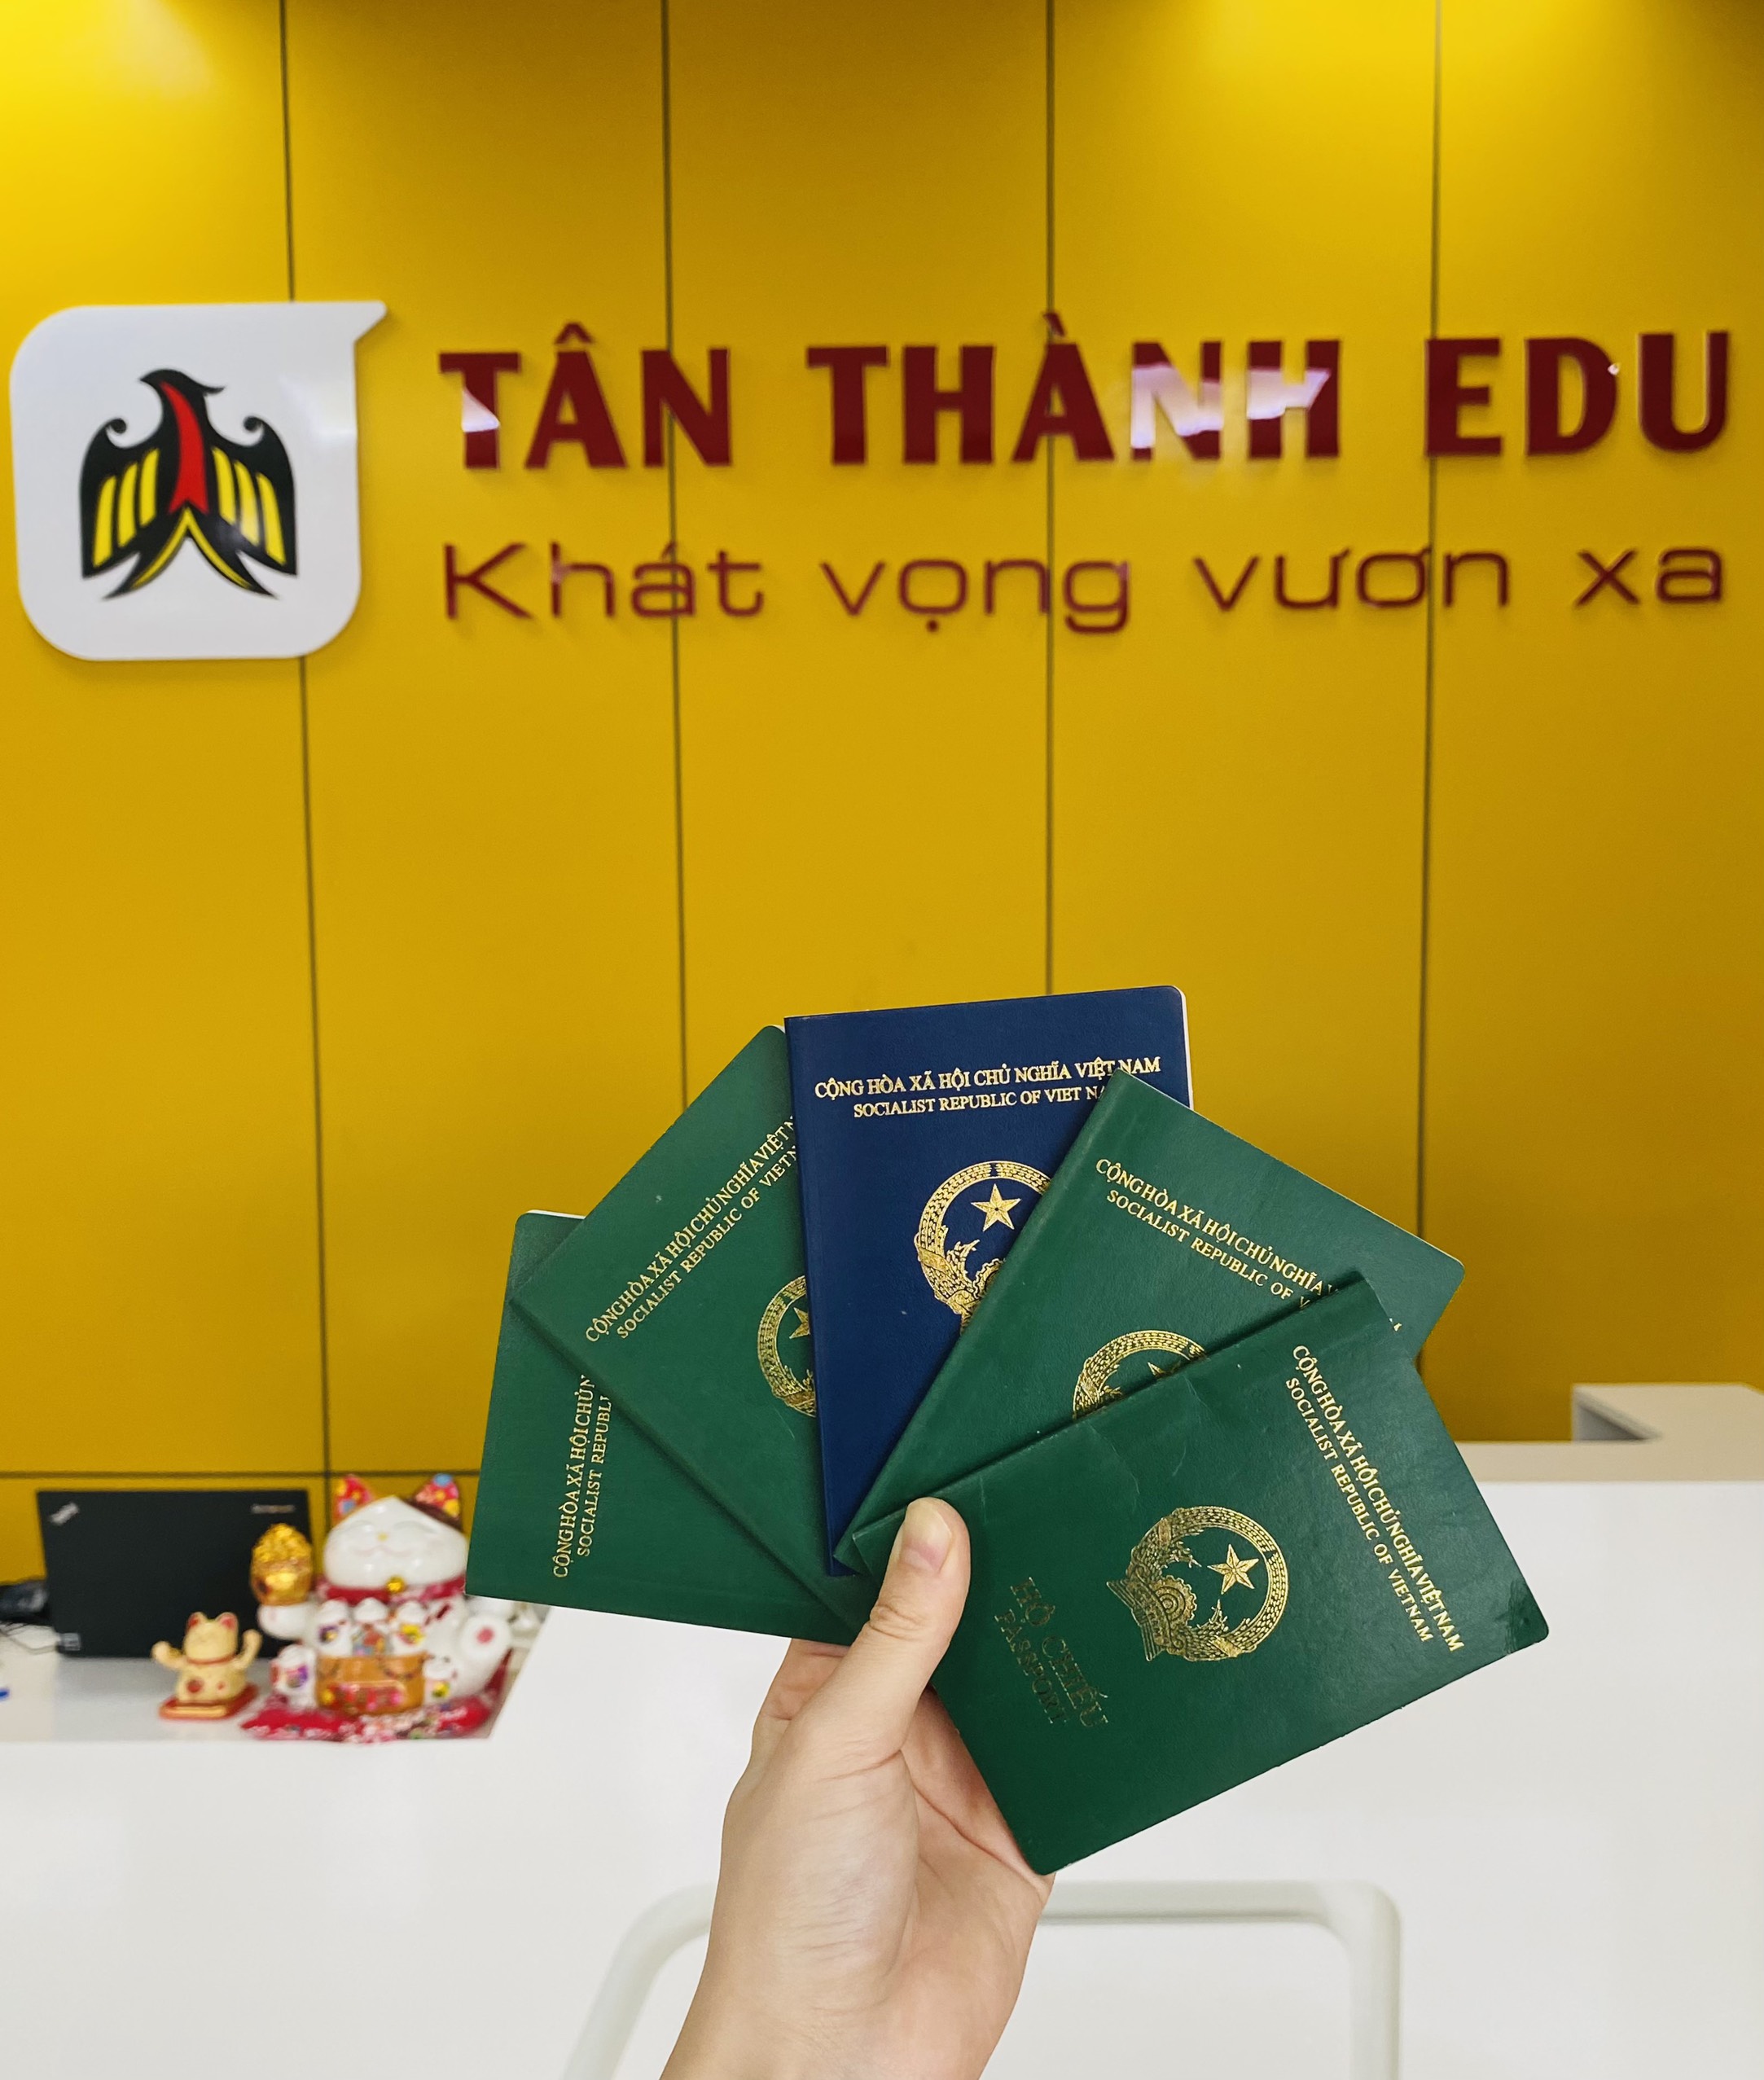 Tân Thành Edu có tốc độ xử lý Visa nhanh nhất thị trường chỉ từ 1- 2 tuần